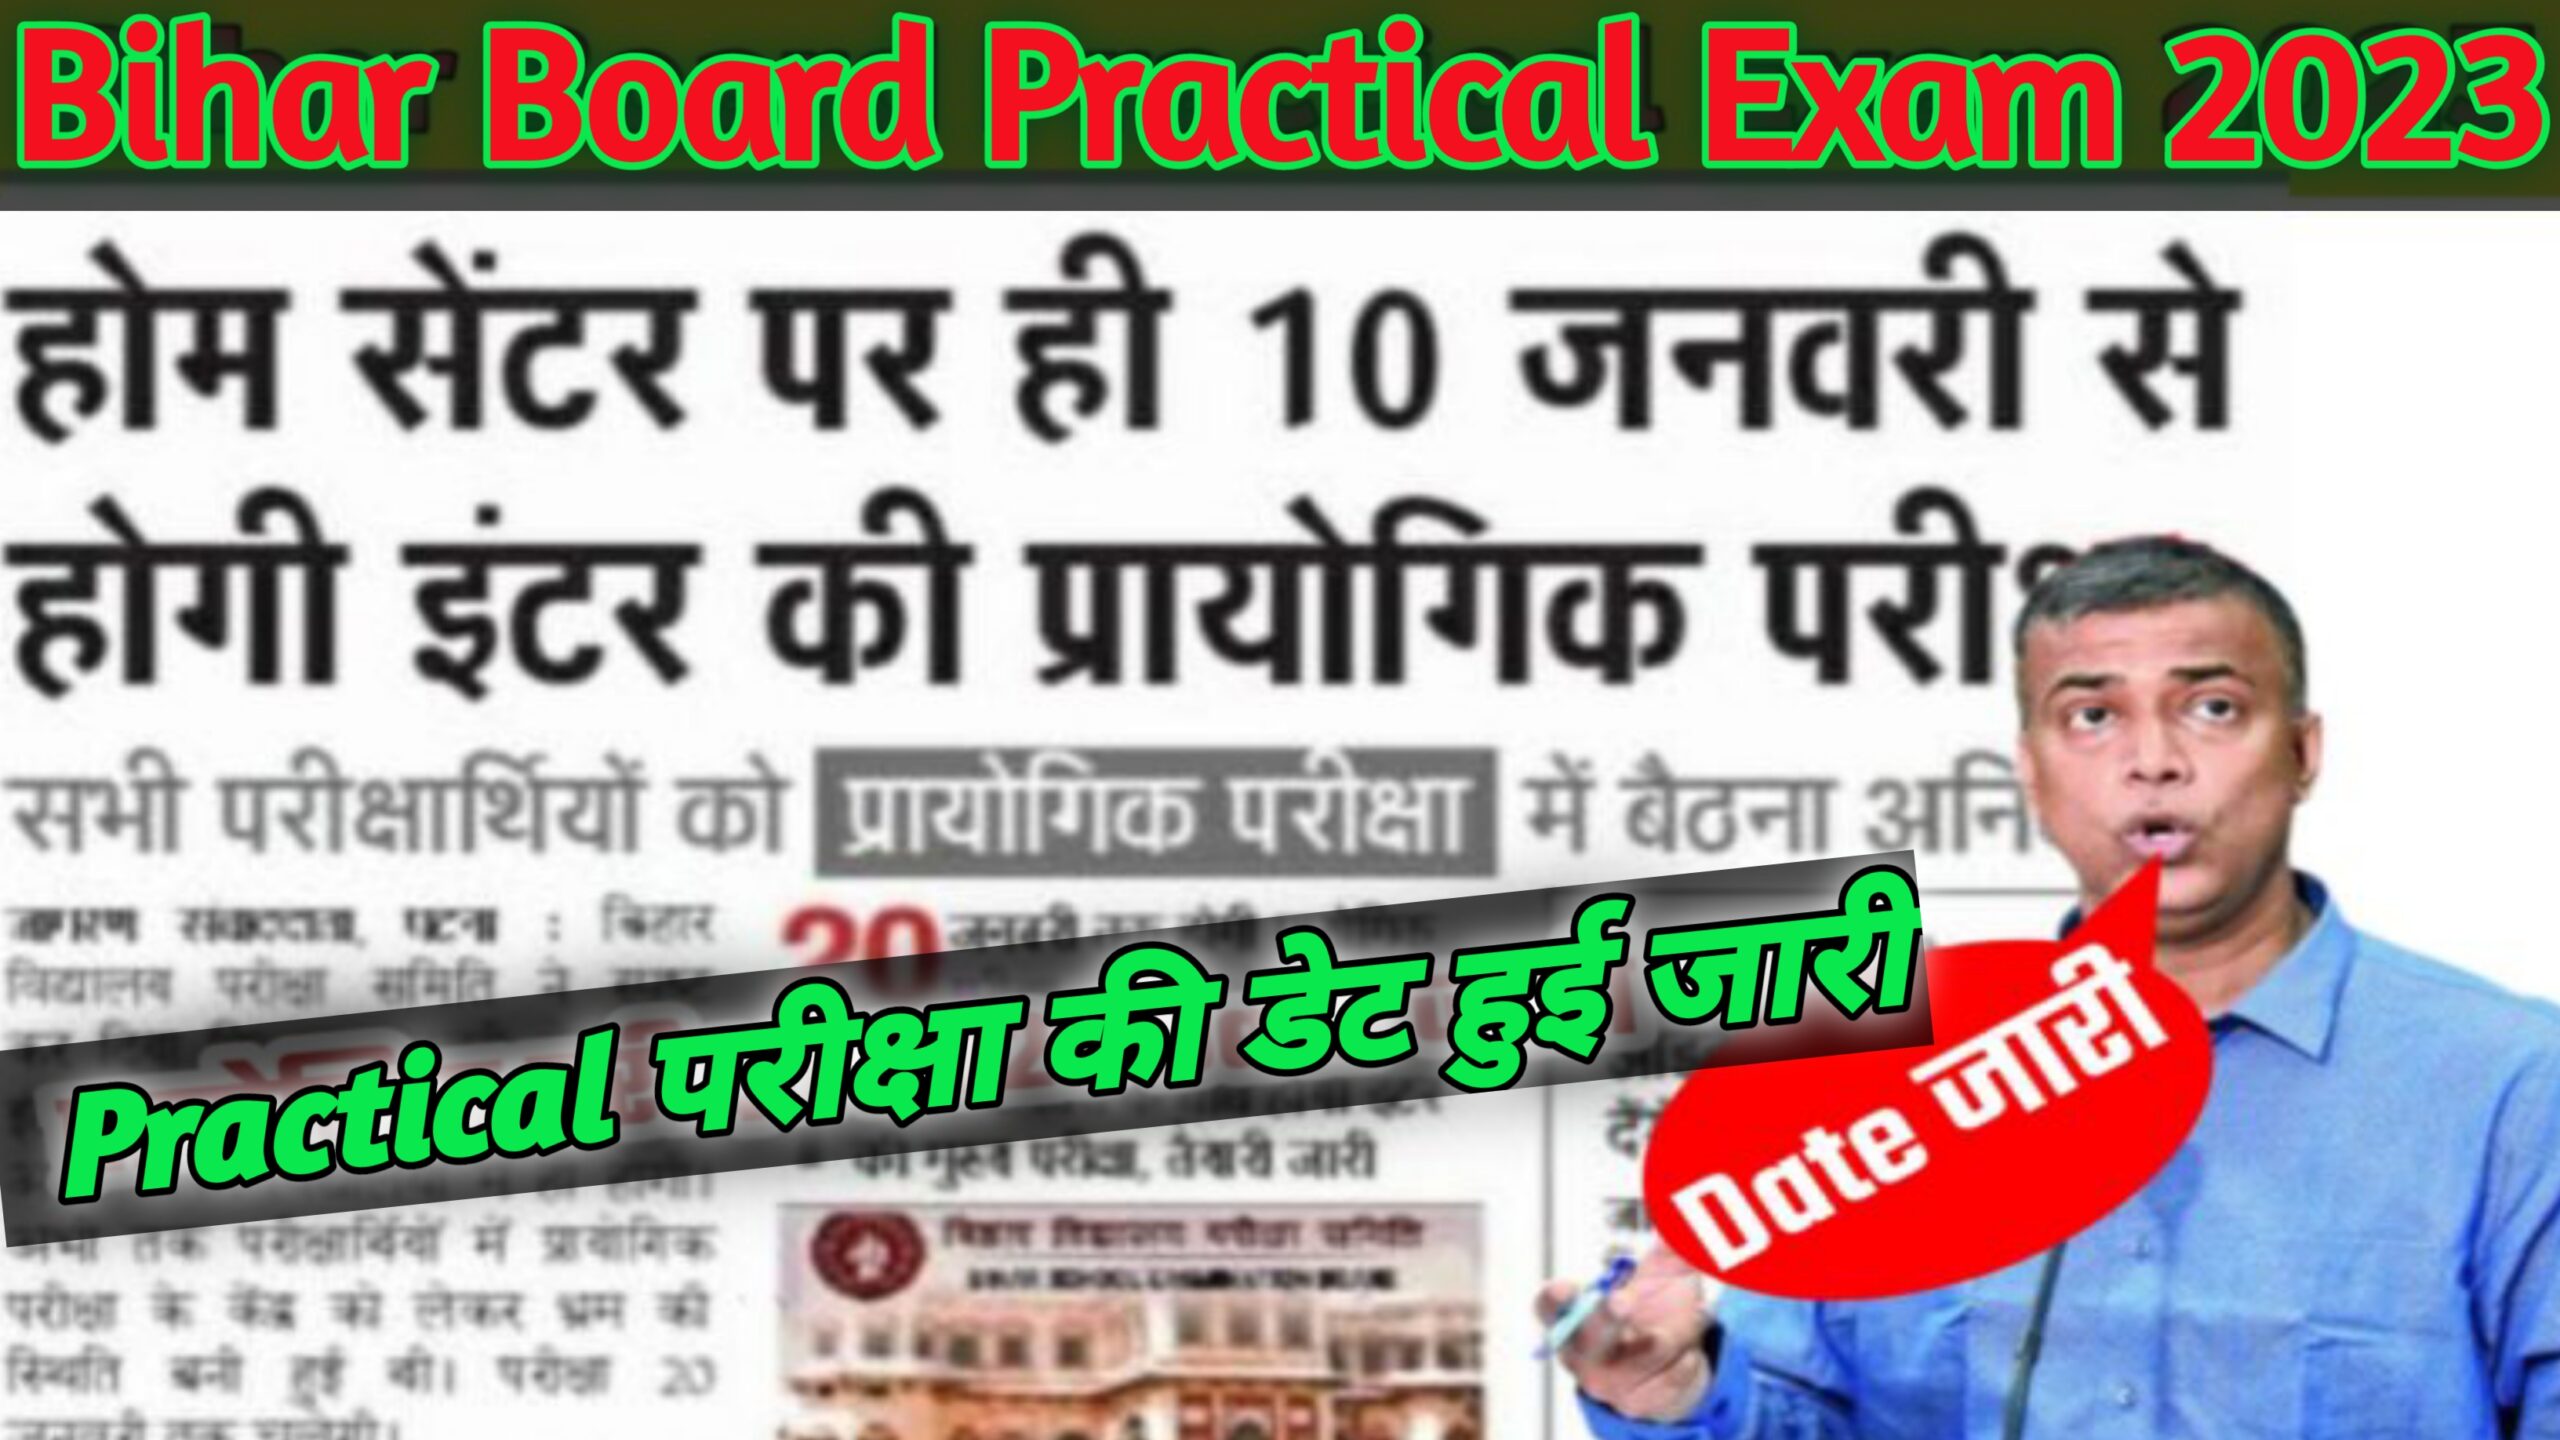 प्रैक्टिकल परीक्षा की रूटीन हुआ जारी जल्दी देखे कब से है परीक्षा Bihar Board Class 10th And 12th Practical Exam 2023